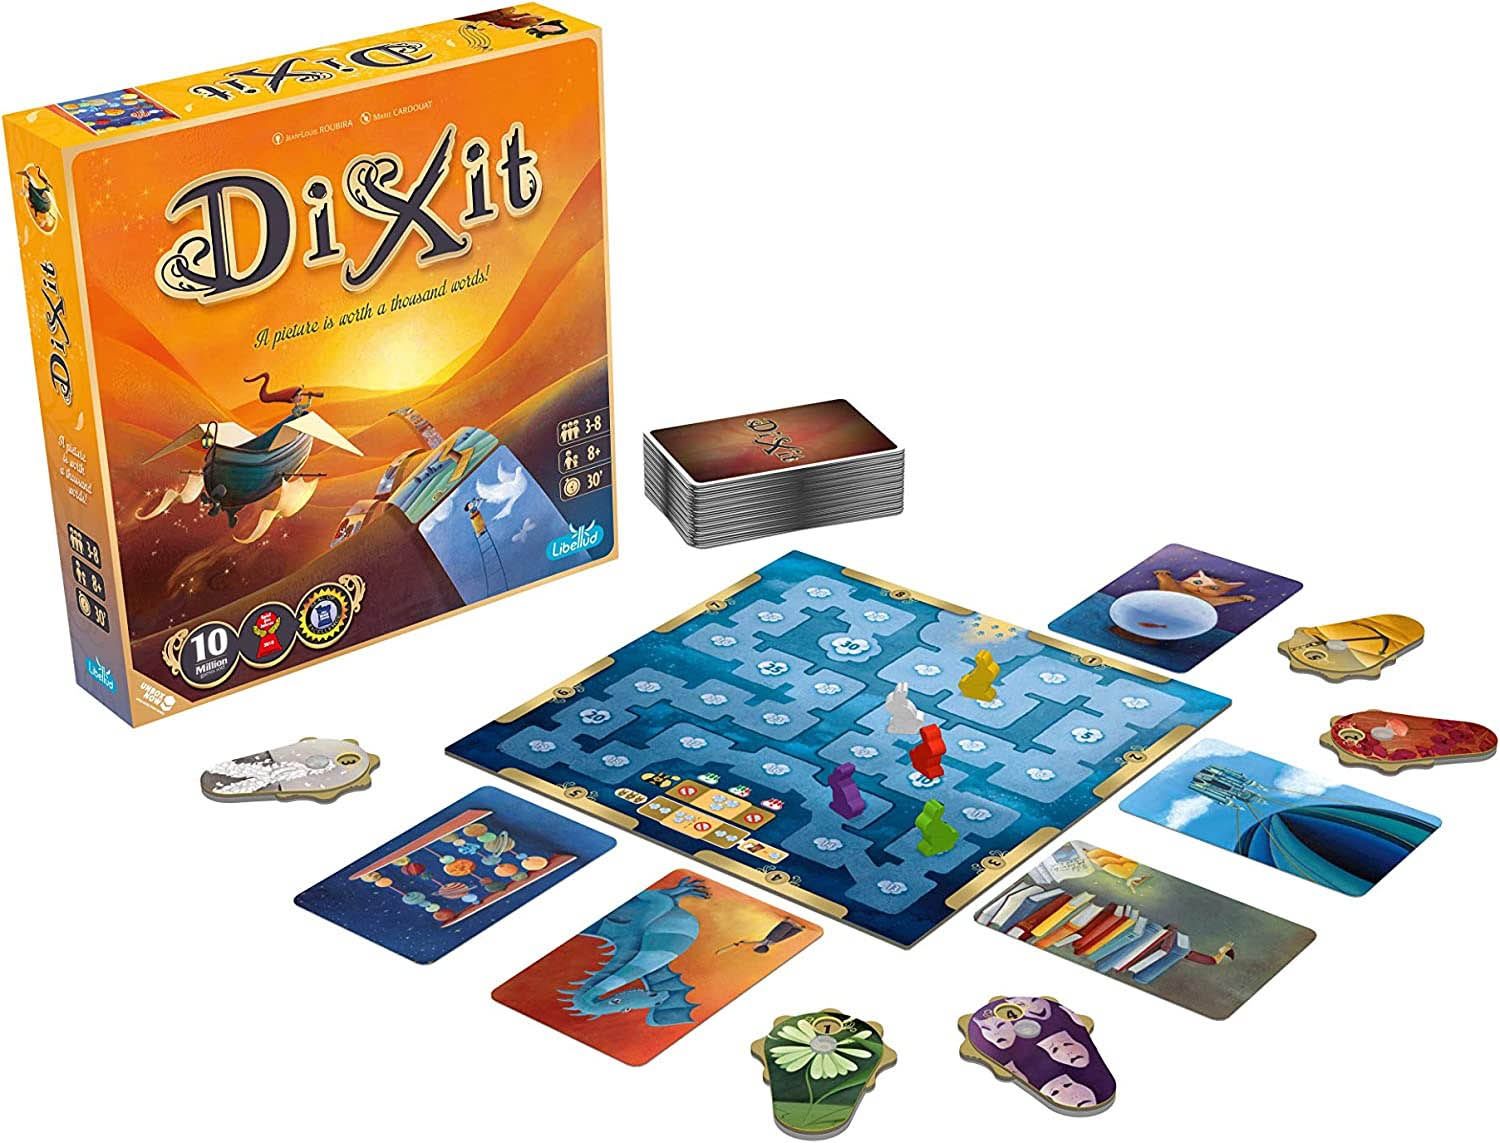 Настольная игра Dixit базовая игра или Dixit Odyssey укр/англ язык